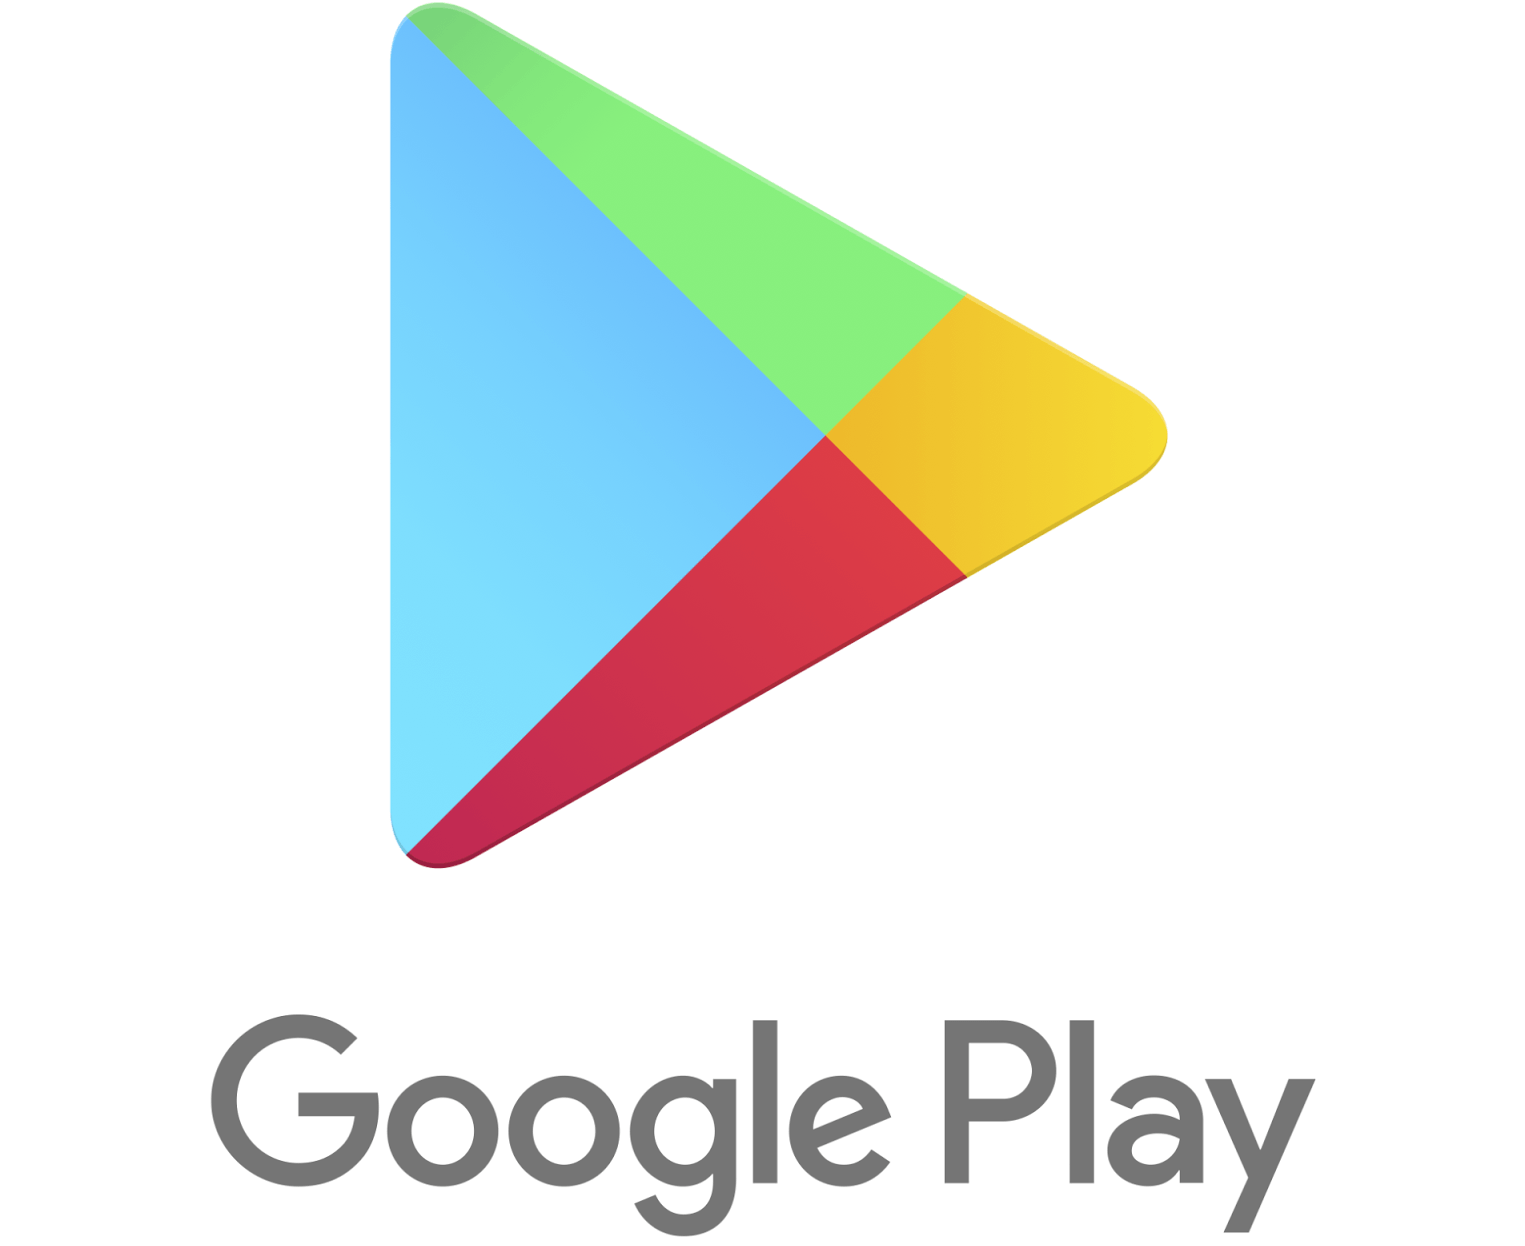 Google Play Logo - Google Play Logo Amazing Image Download - 10619 - TransparentPNG